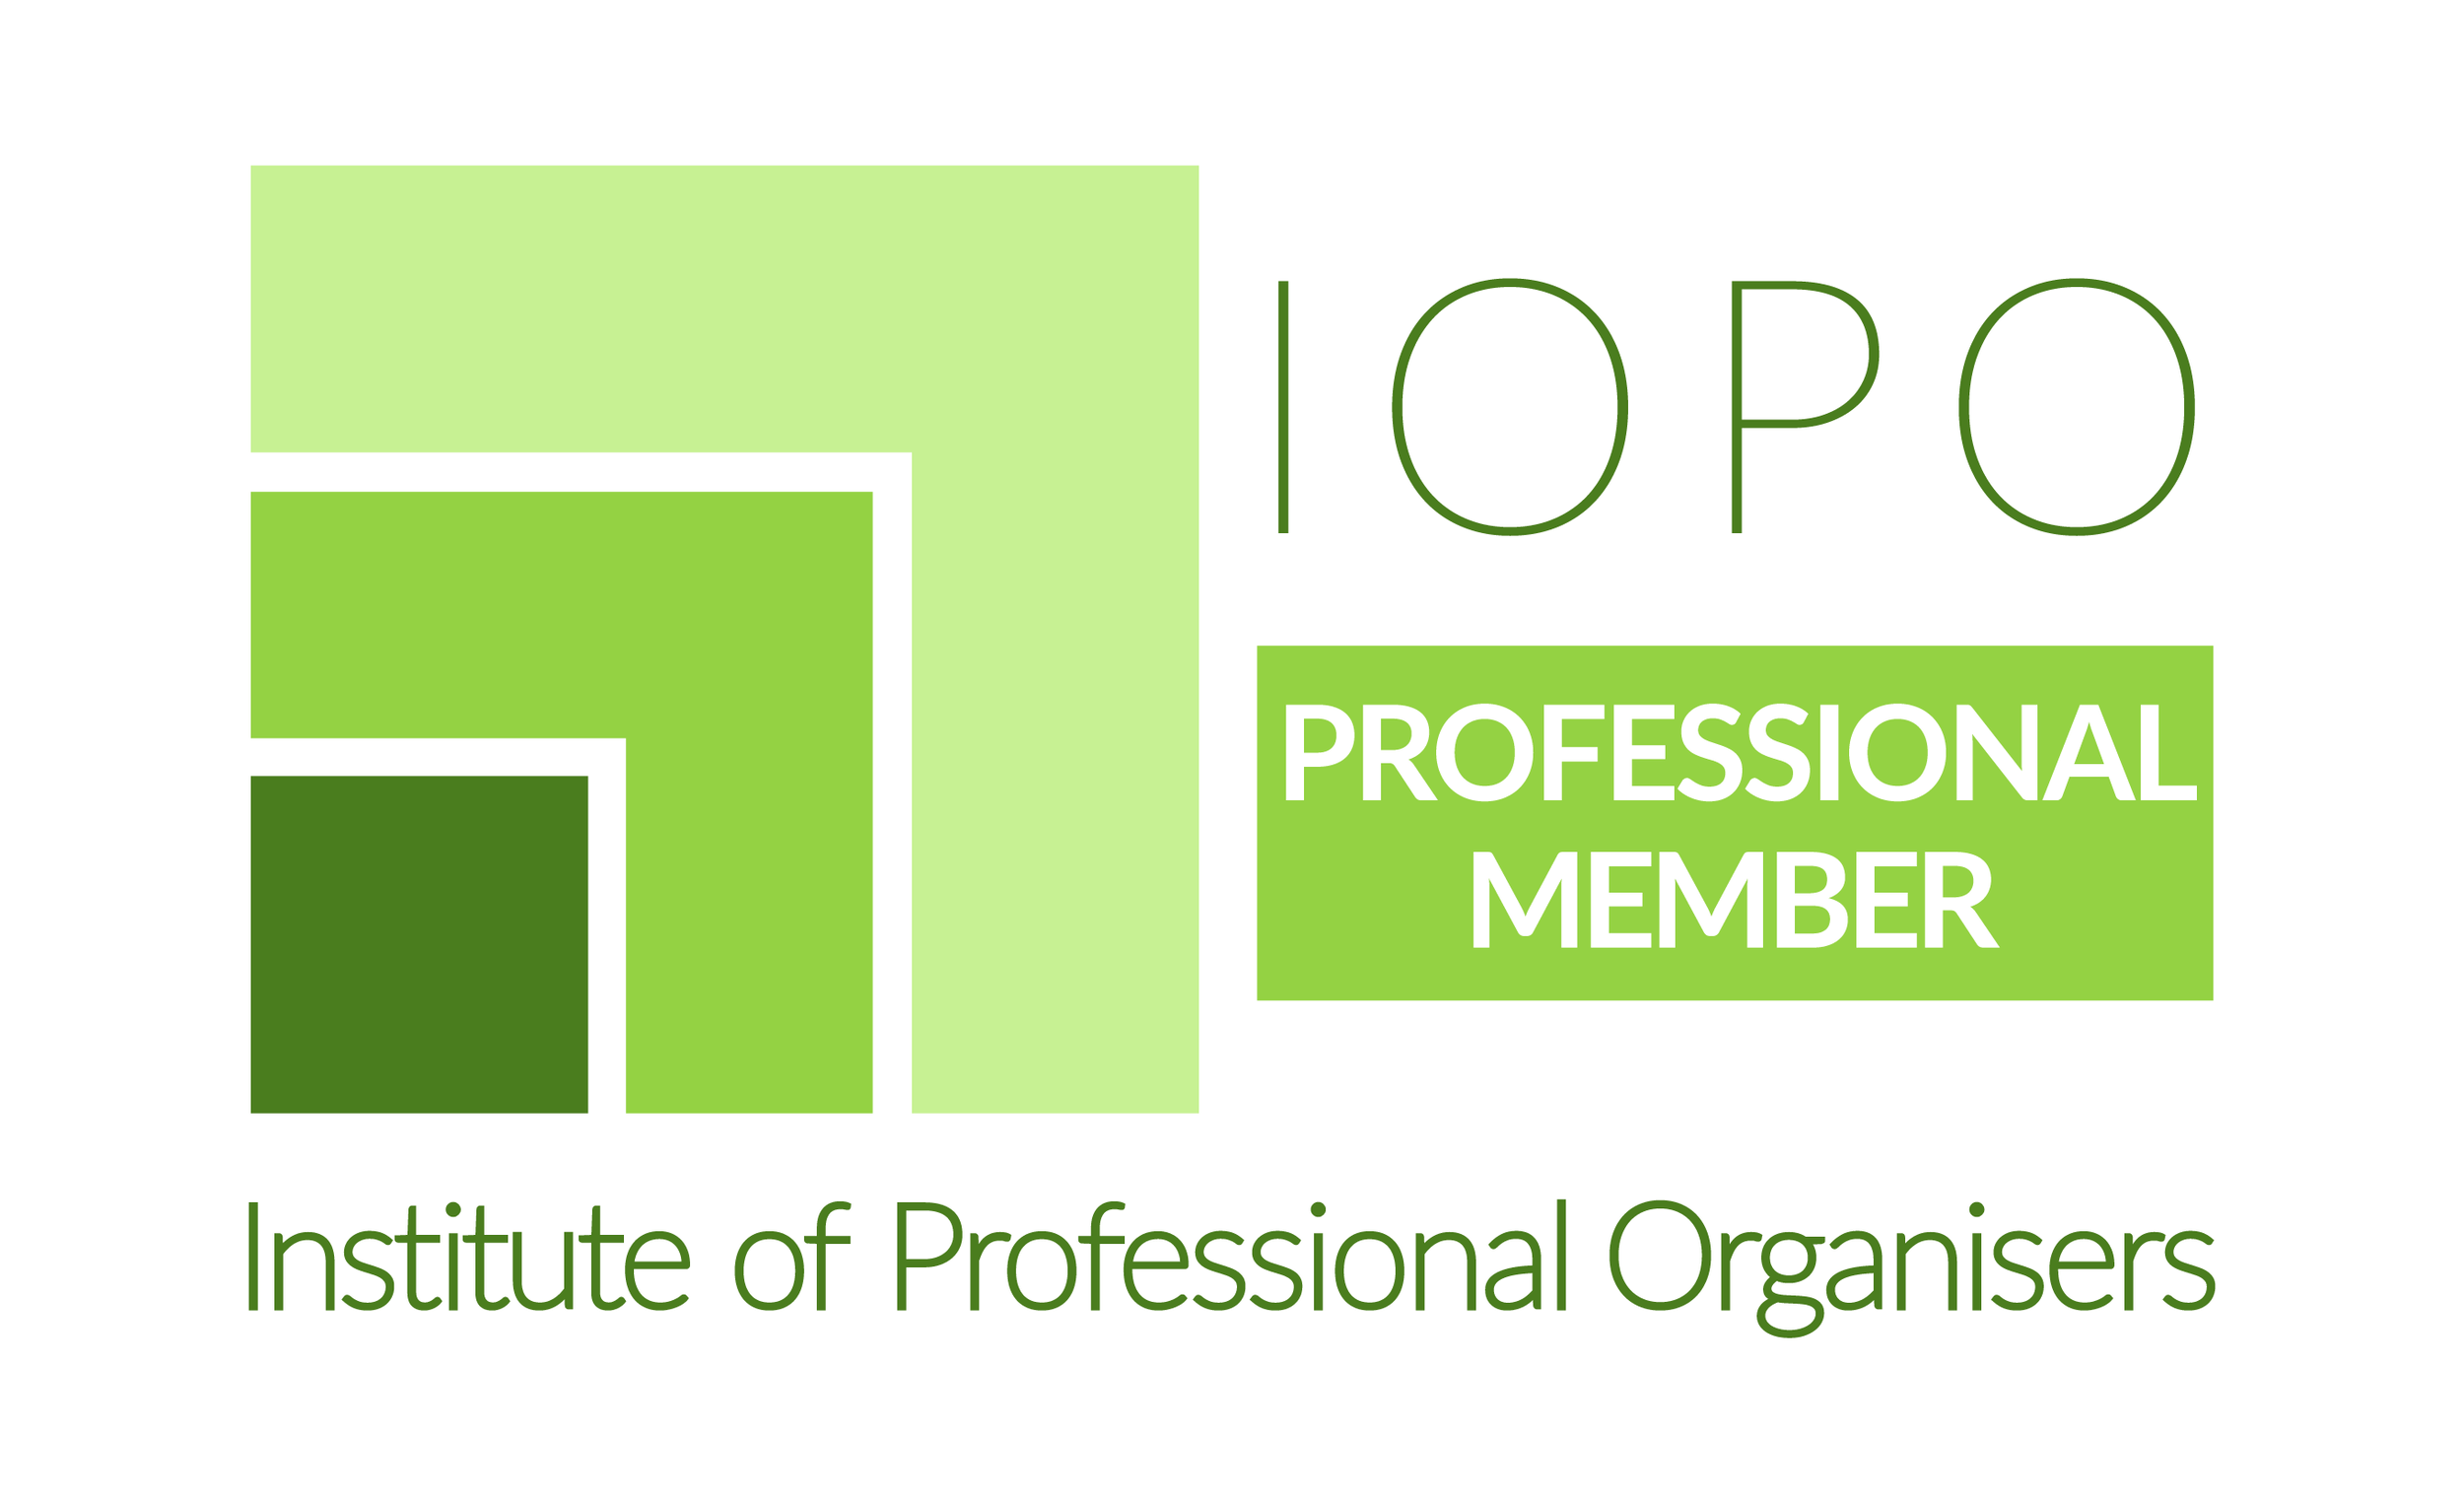 IOPO Professional Member logo.png